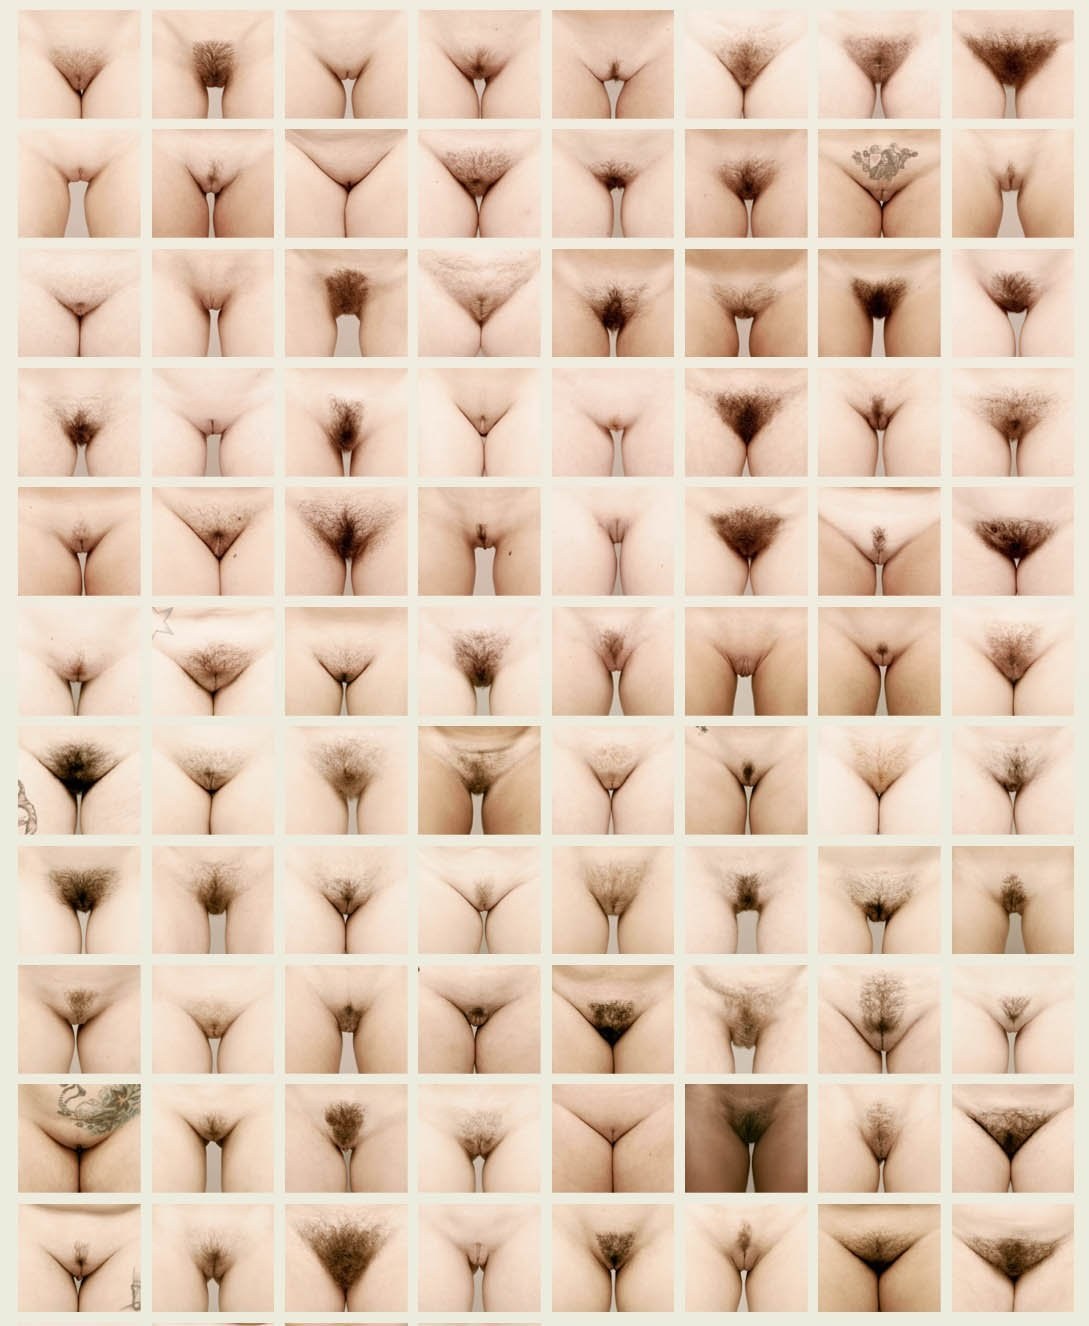 Подборка фотографий женских половых органов